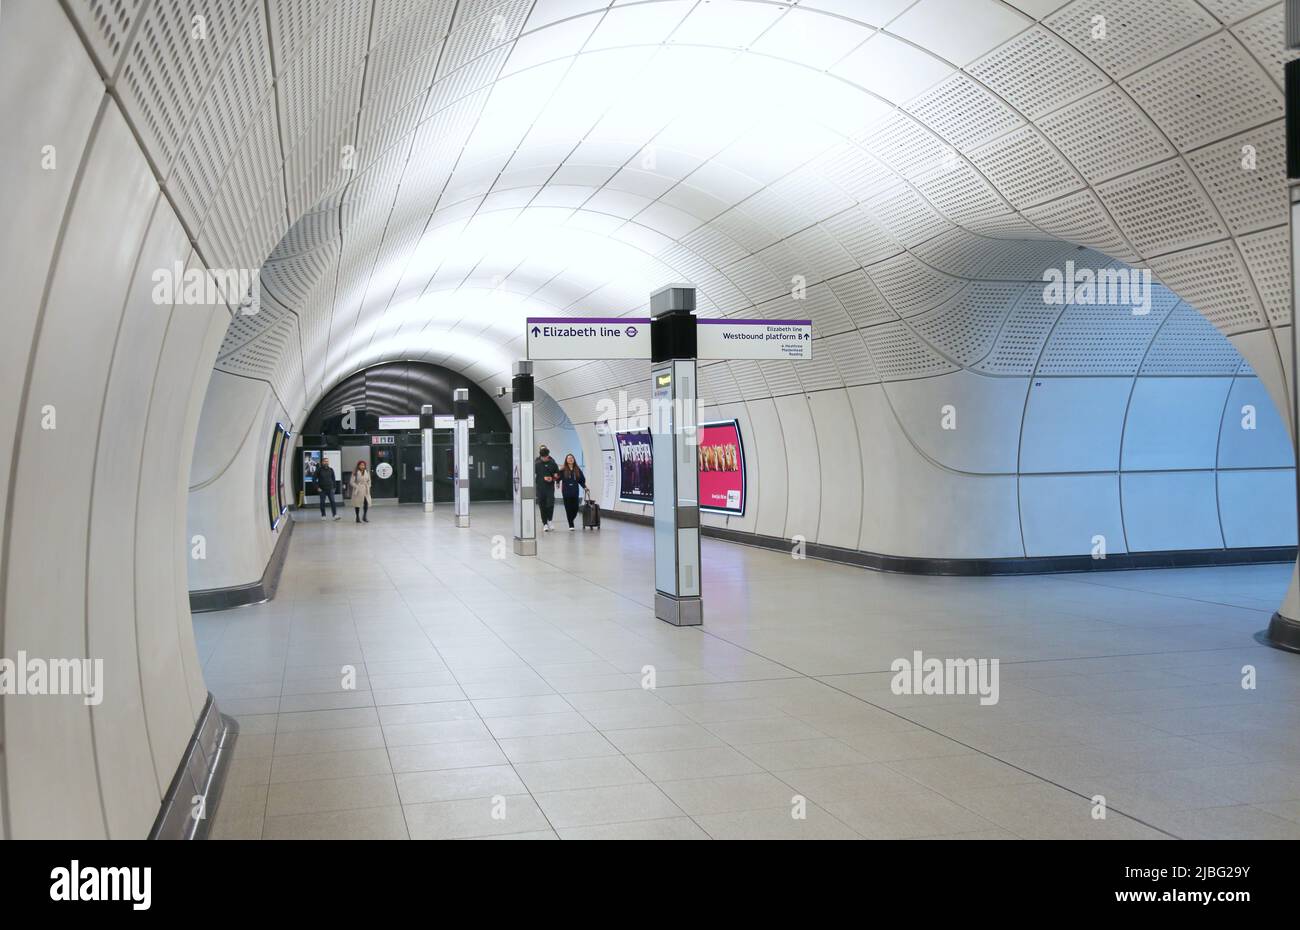 Londres, Reino Unido. Túneles subterráneos en la Estación Farringdon en la nueva red de la Línea Elizabeth (Crossrail). Señales directas a plataformas hacia el este o hacia el oeste. Foto de stock